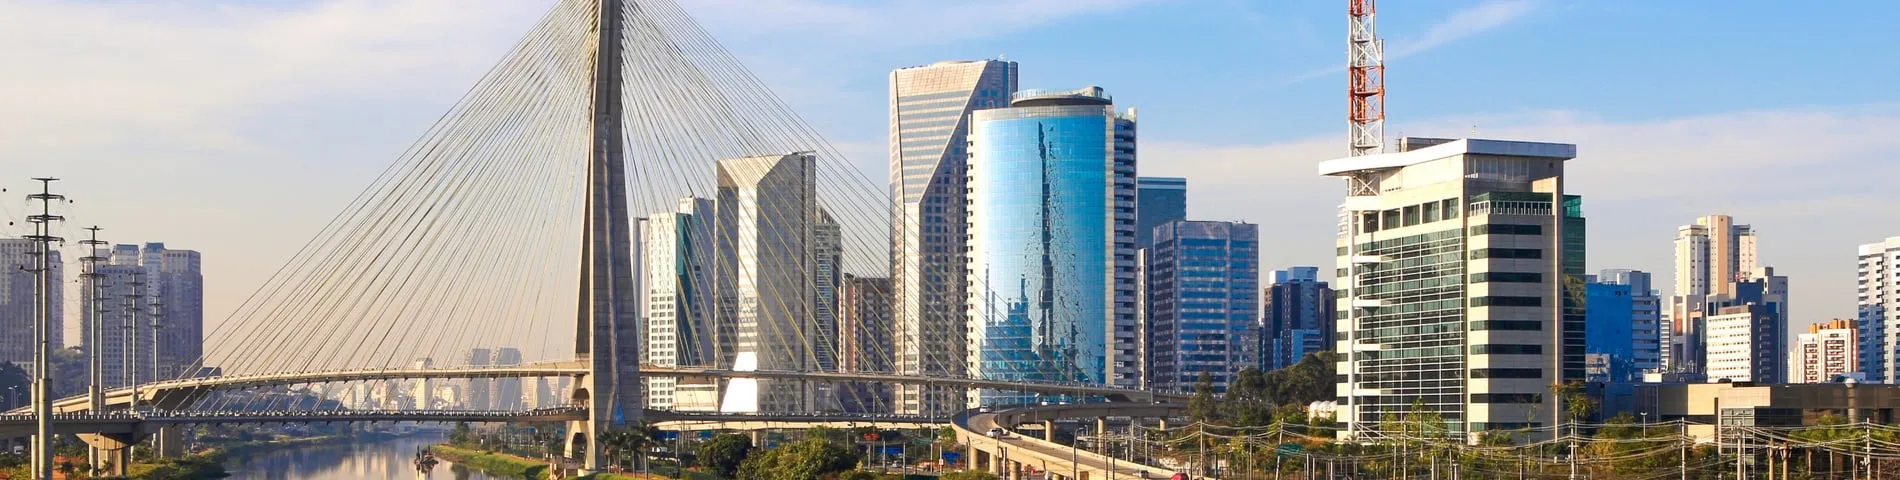 Sao Paulo - Standardkurs